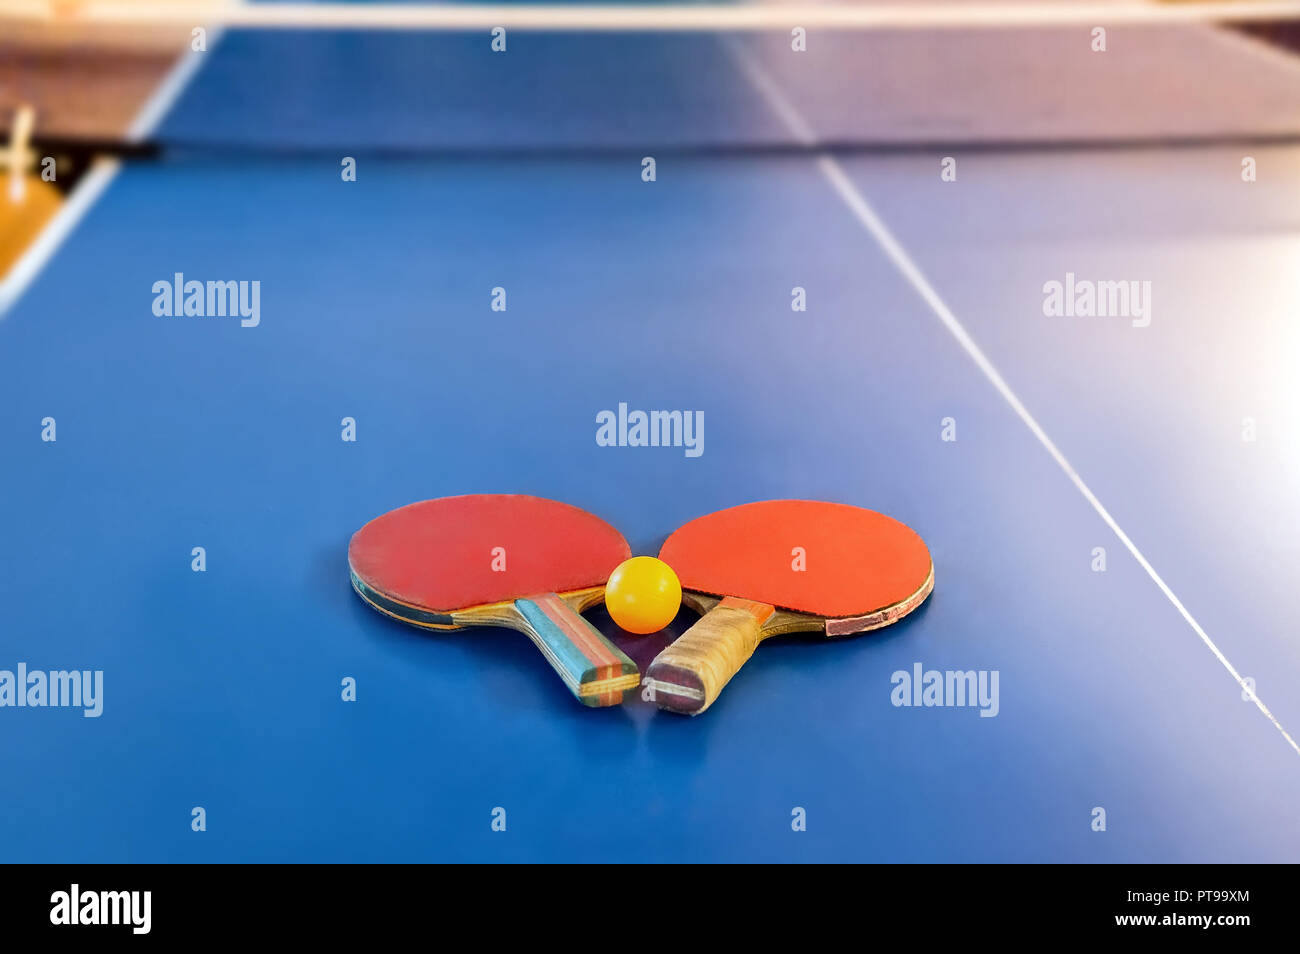 Raqueta de tenis o ping pong en un juego de mesa de color azul. Tenis de mesa Foto de stock